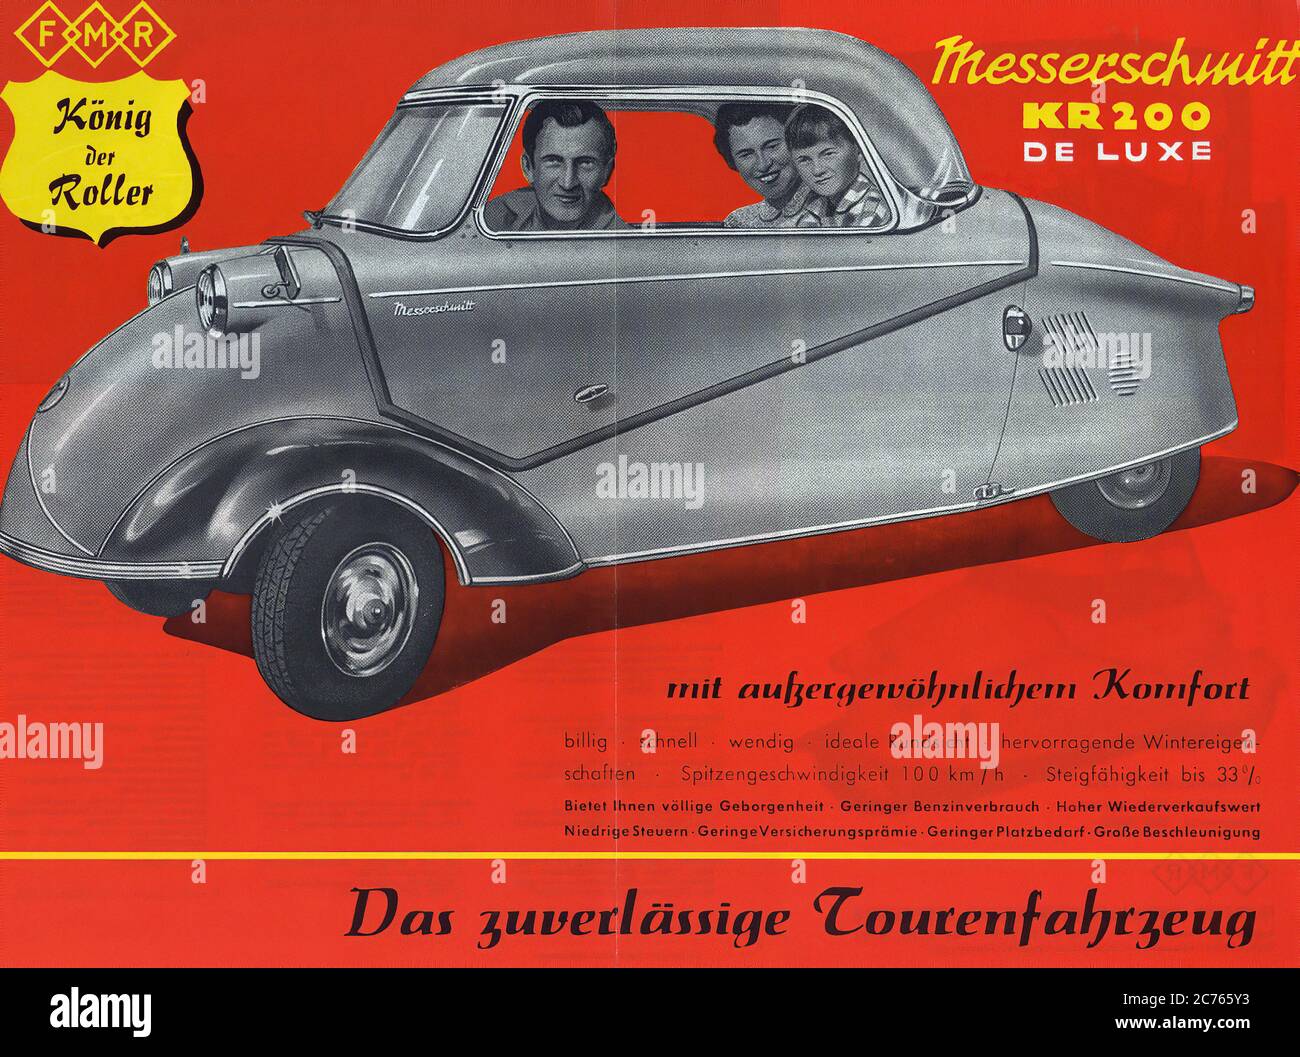 Messerschmitt Kabinenroller 200 Werbung Von 1955 - Vintage car advertising Stock Photo